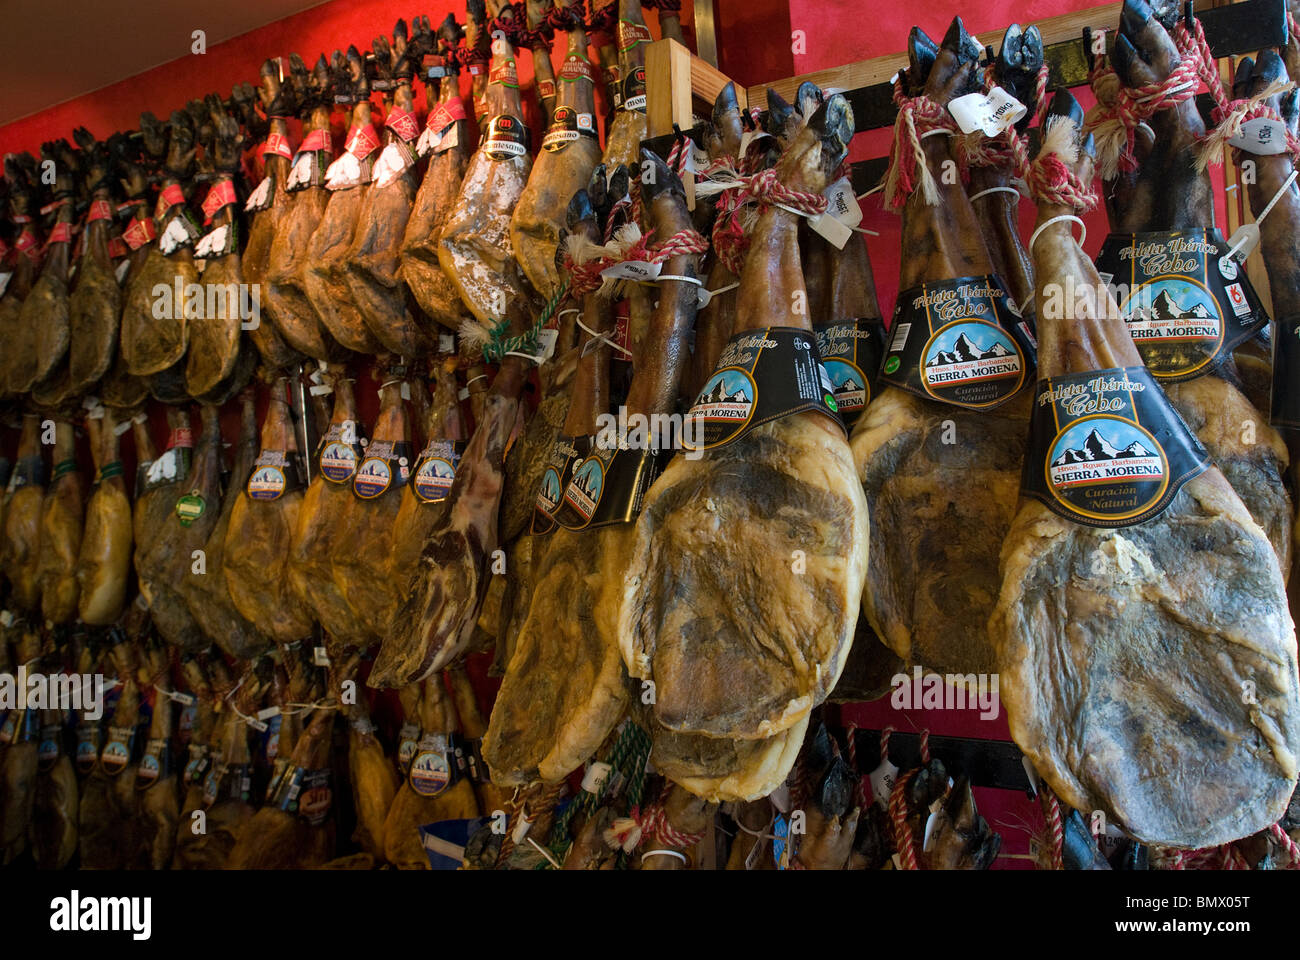 Piernas de Jamón de Jamón curado en exhibición para la venta, Mahón, Menorca, Baleares, España Foto de stock